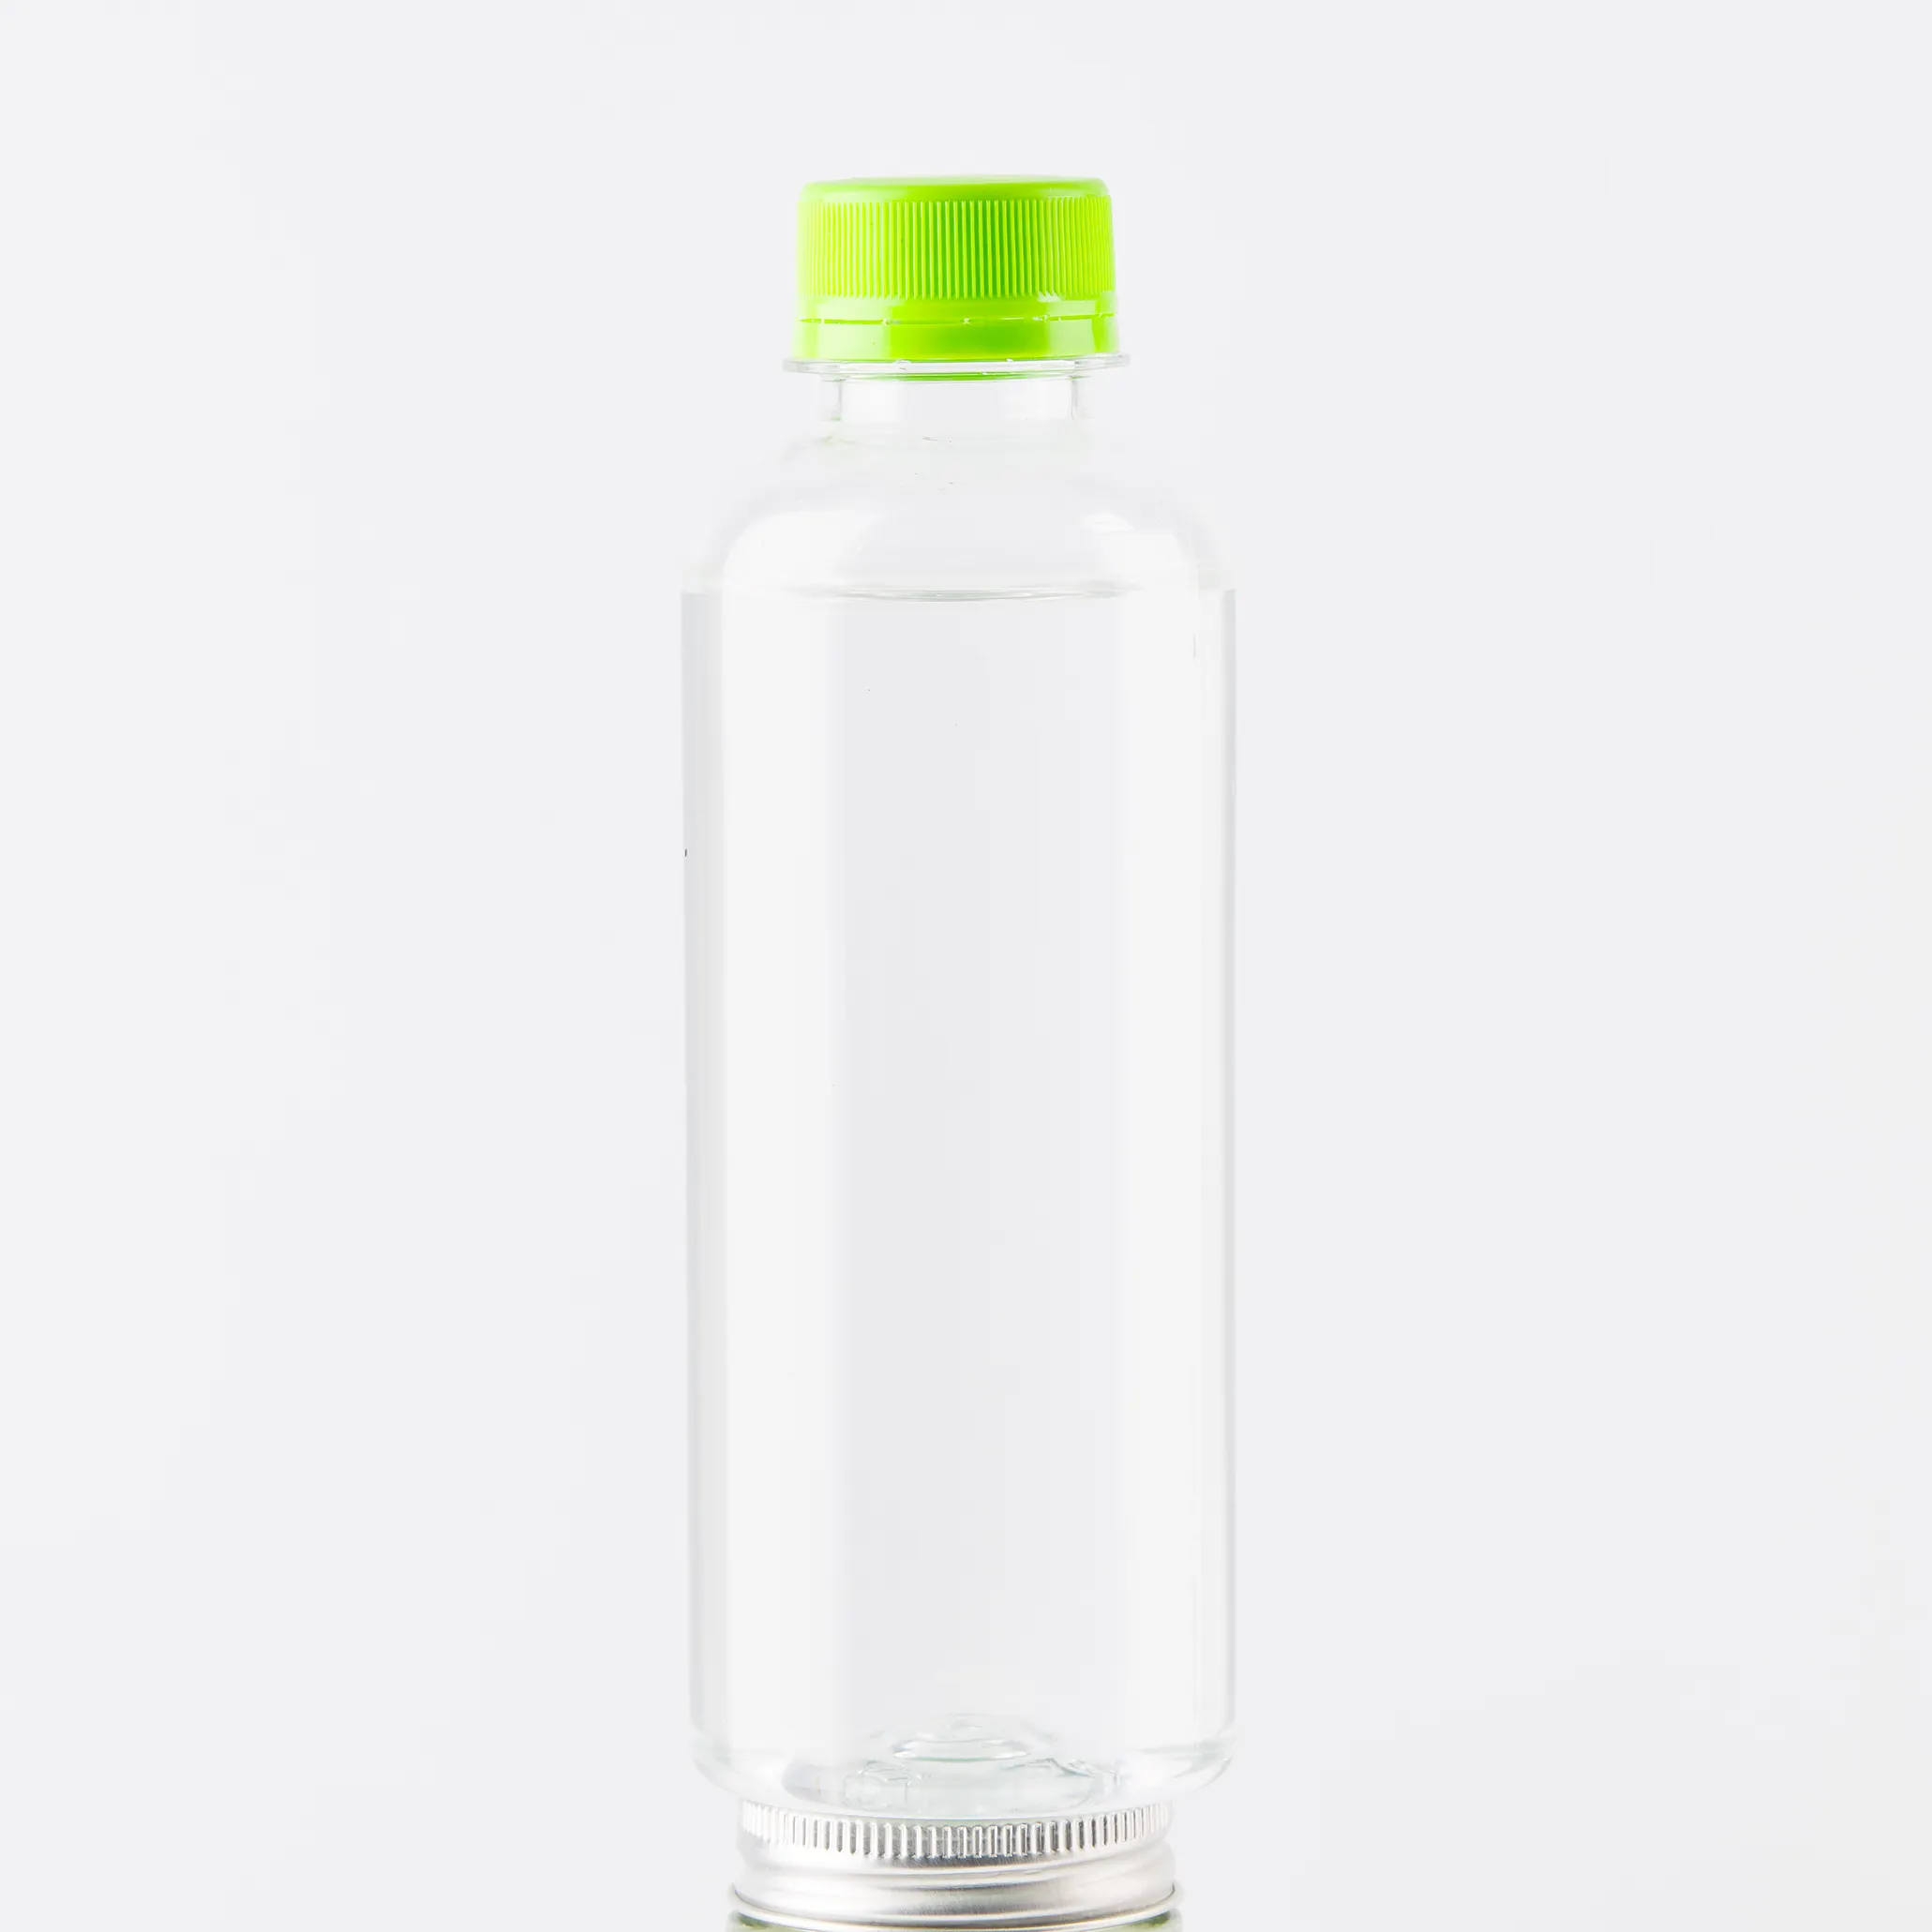 TERBAIK Kualitas Premium dari Beku 100% Jus Mentah Organik Air Kelapa Muda (Nam-Hom) Di Botol